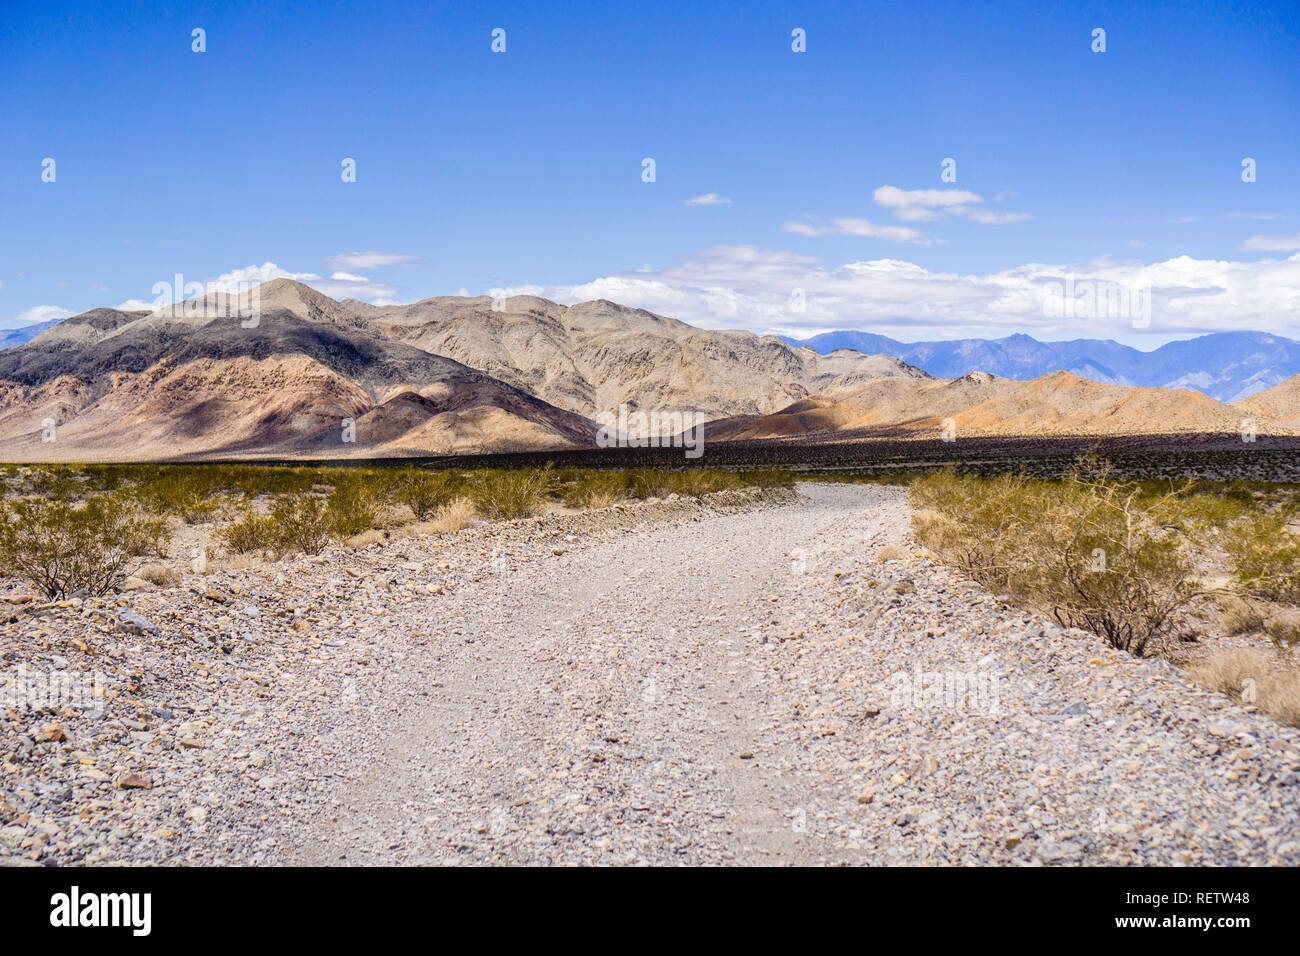 Reisen auf einer unbefestigten Straße durch eine einsame Gegend des Death Valley National Park; Berge und blauer Himmel im Hintergrund; Kalifornien Stockfoto